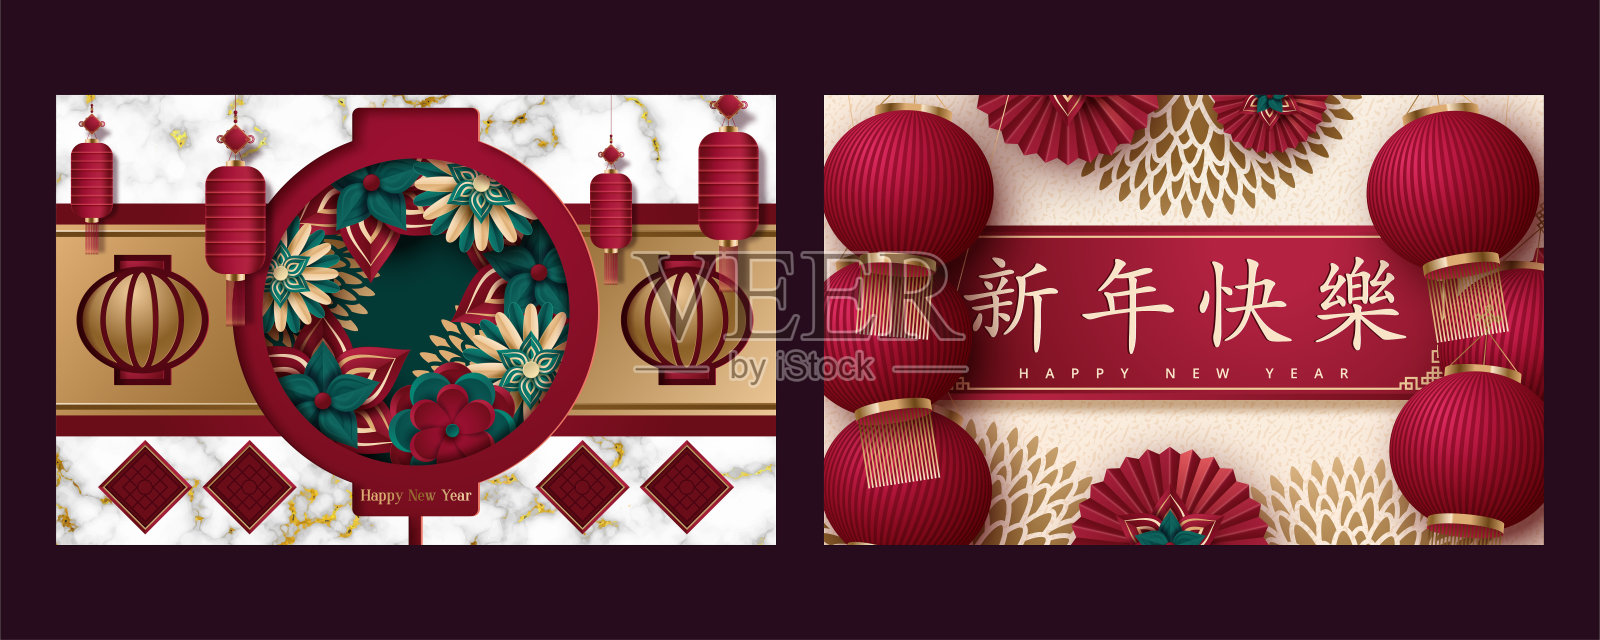 春节快乐。套牌。模板横幅，海报在东方风格。日本、中国元素。翻译:新年快乐。矢量图设计模板素材